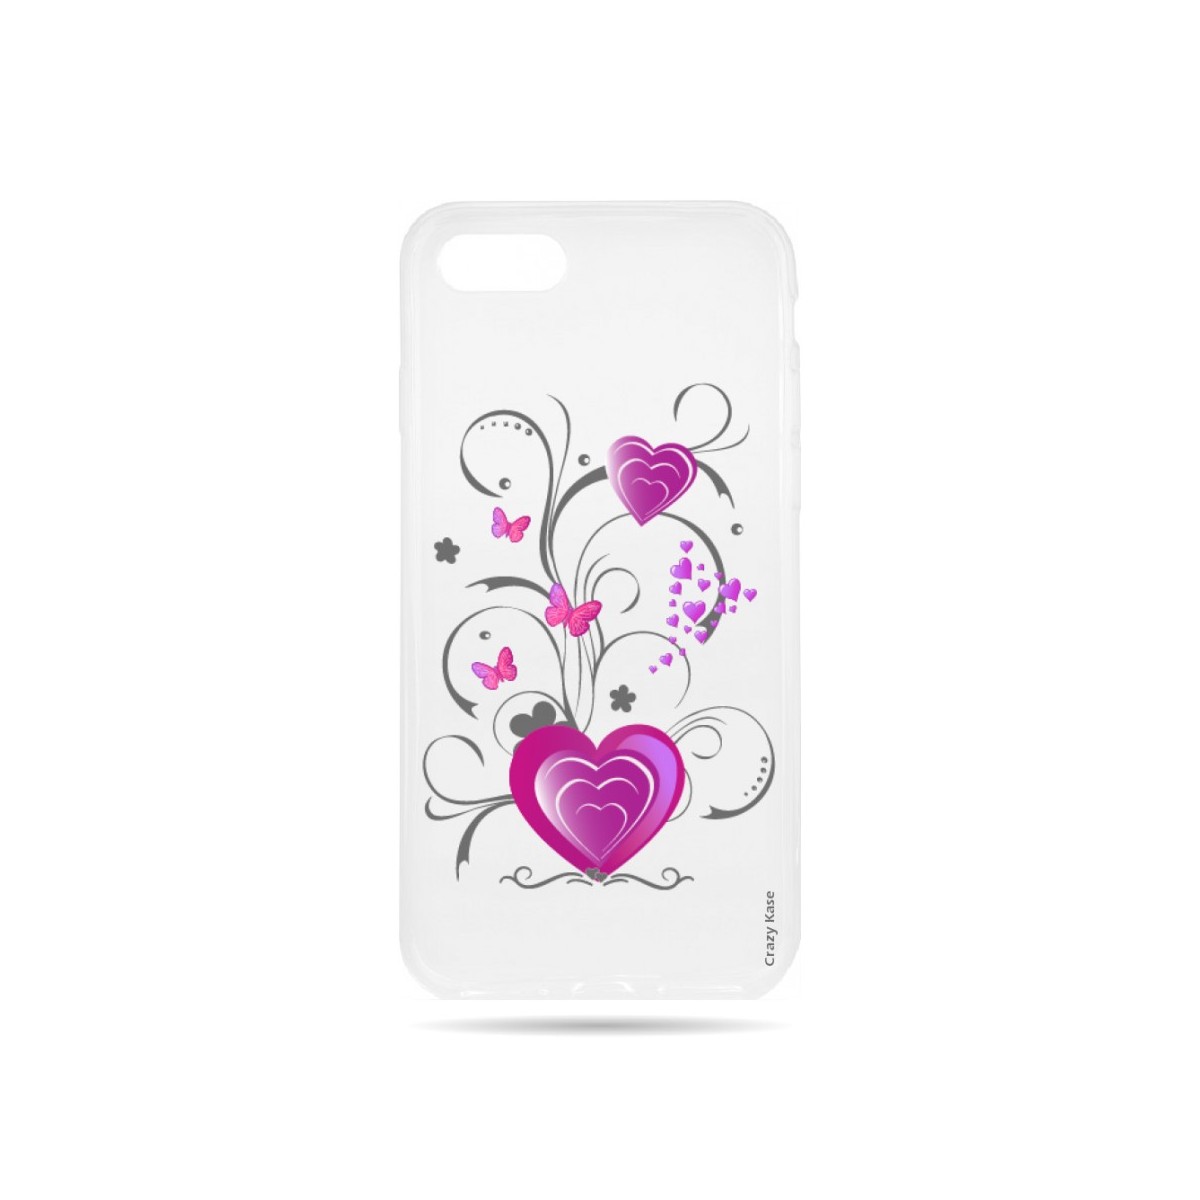 Coque iPhone 7 souple motif Cœur et papillon - Crazy Kase